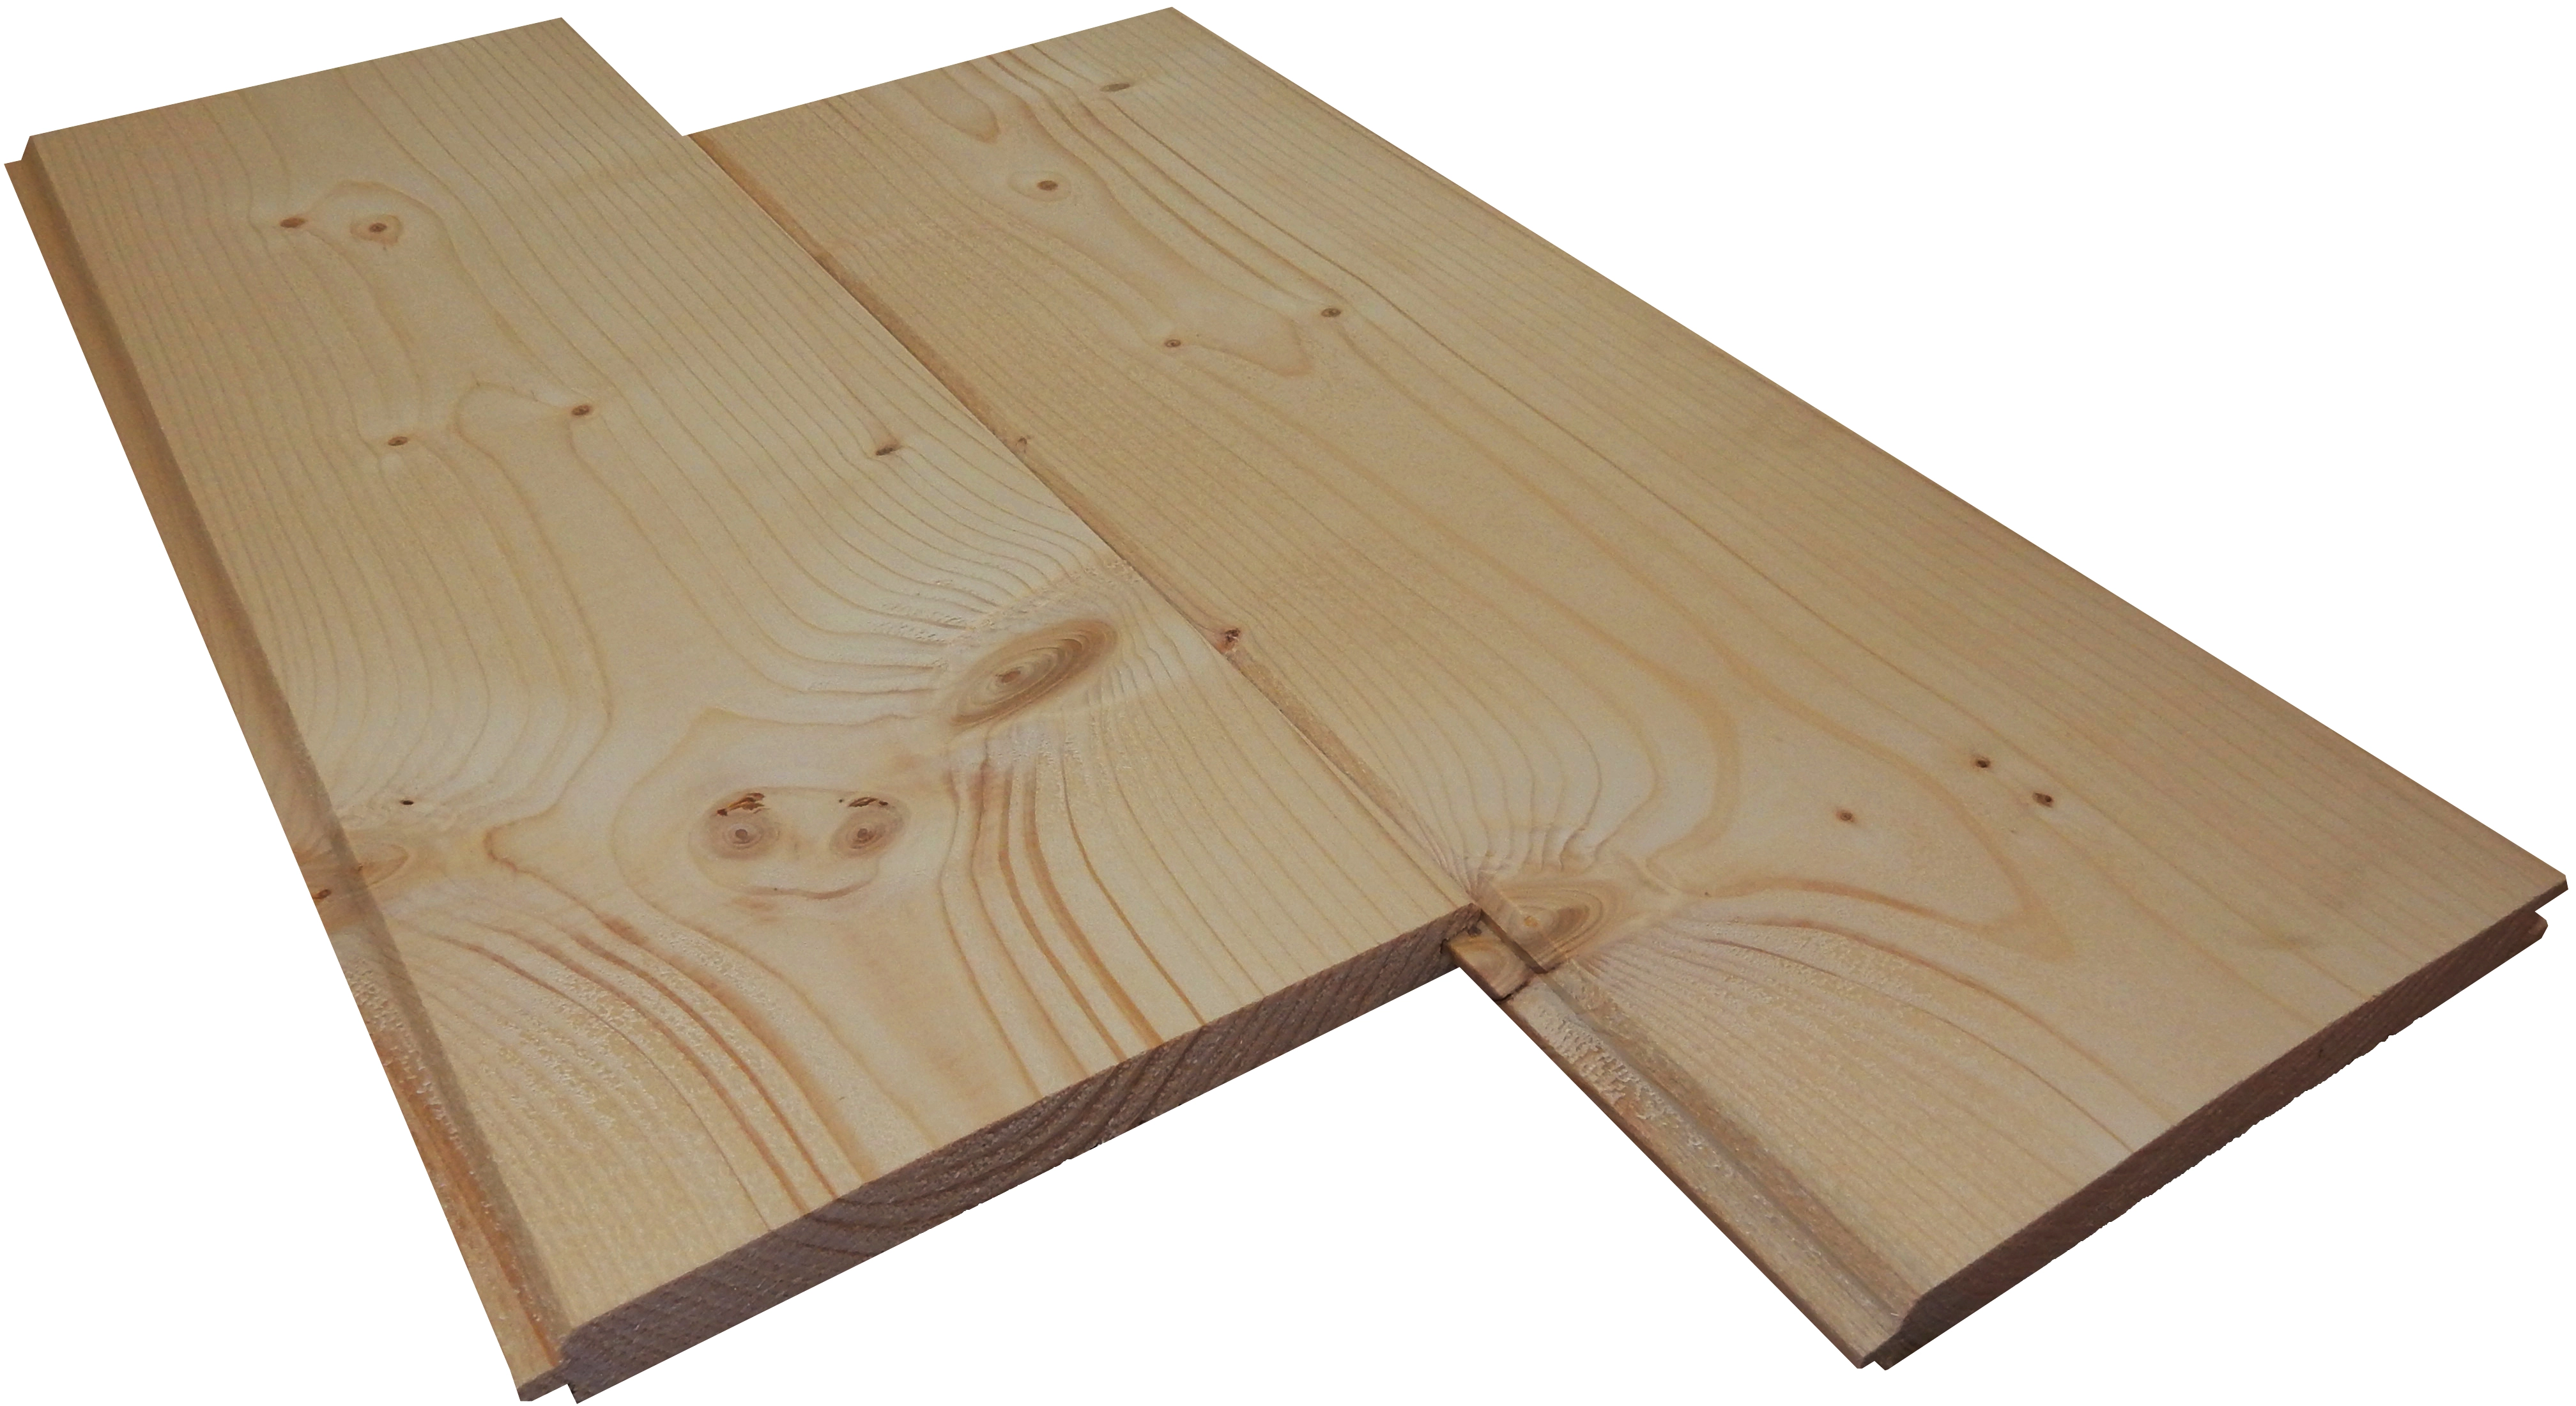 Listone legno grezzo abete L 200 x H 12 cm Sp 20 mm